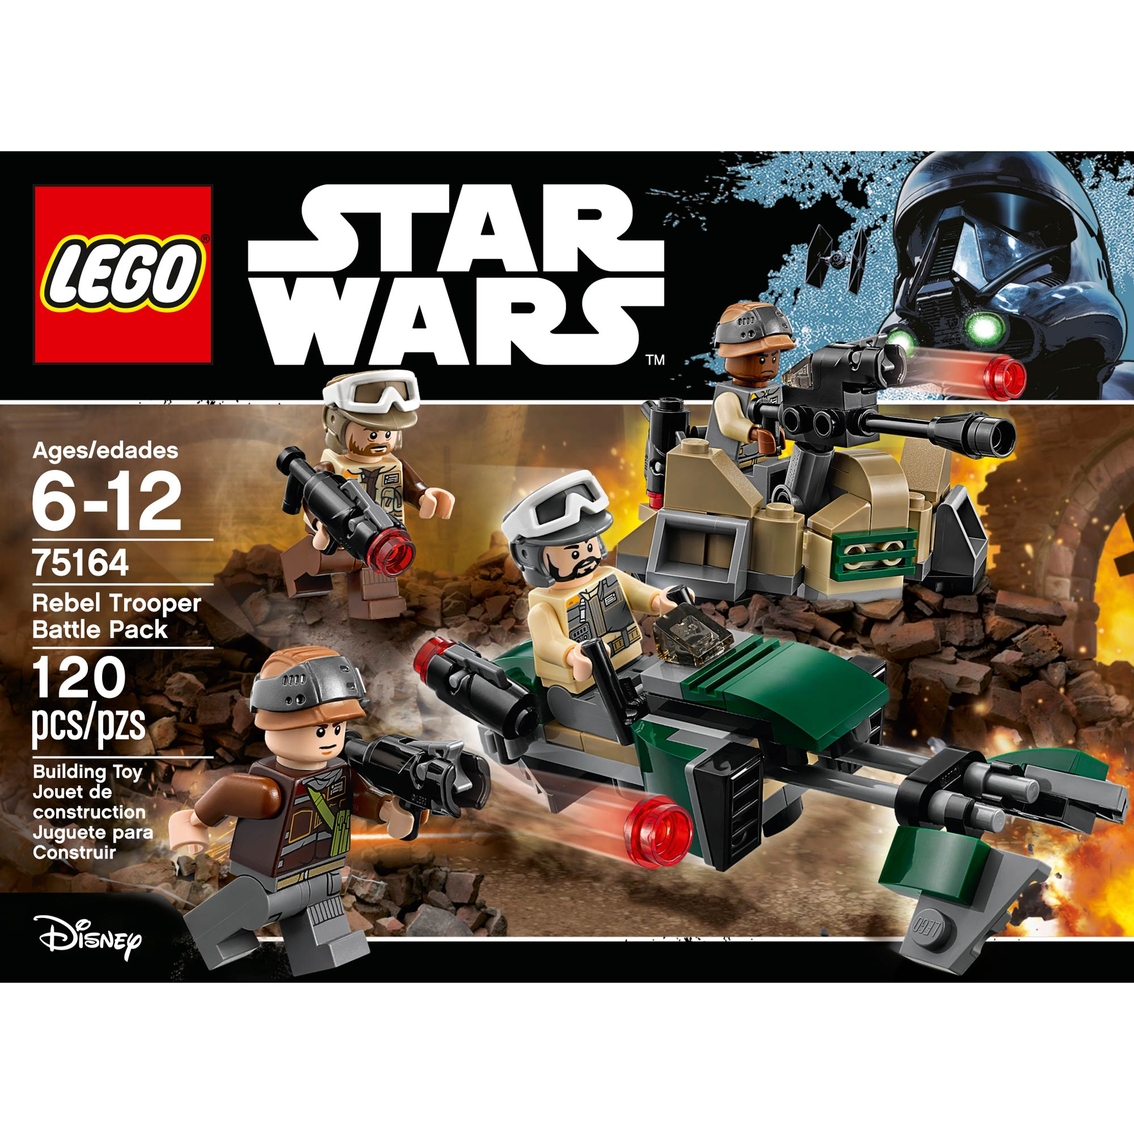 Rebel Trooper Speeder /& Gunner Station no Figures LEGO Star Wars Set 75164